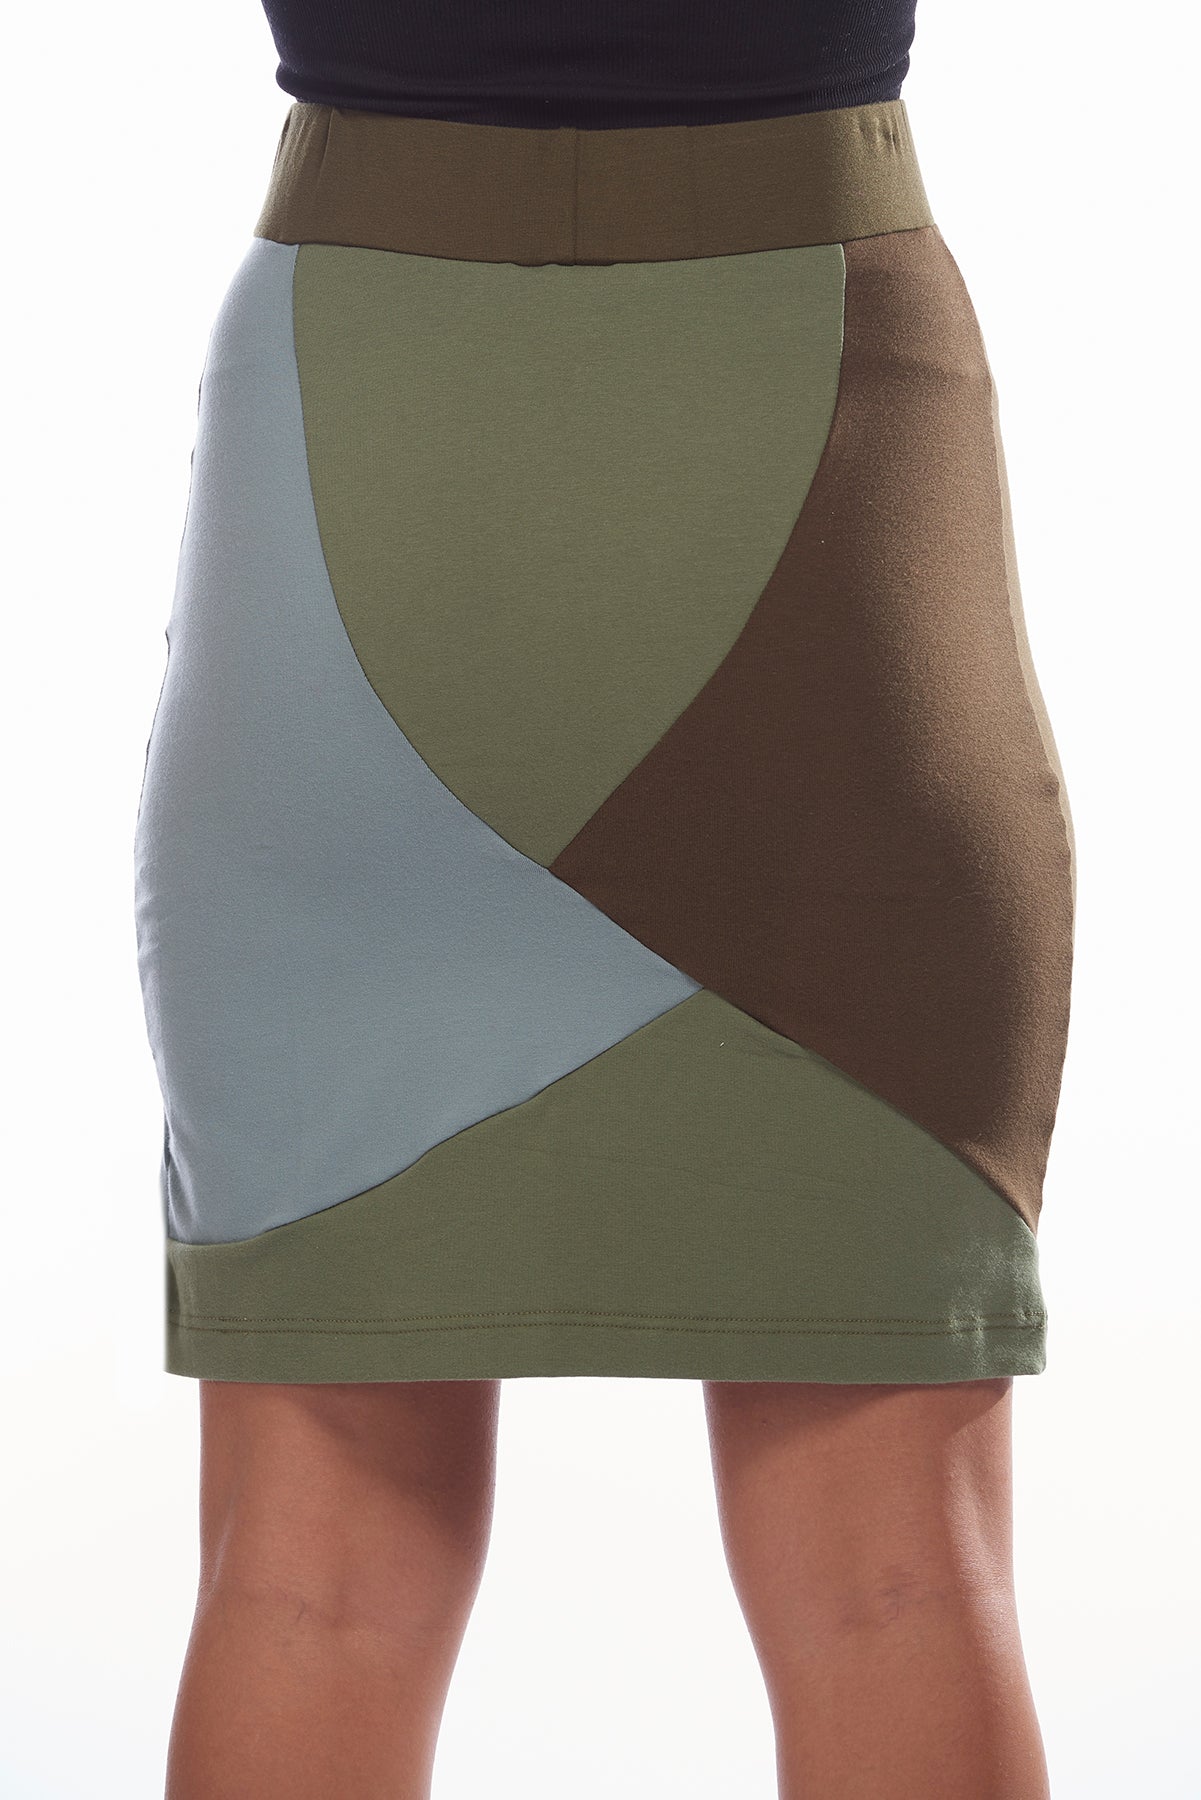 Green-Blue Mosaic Skirt - FOAT